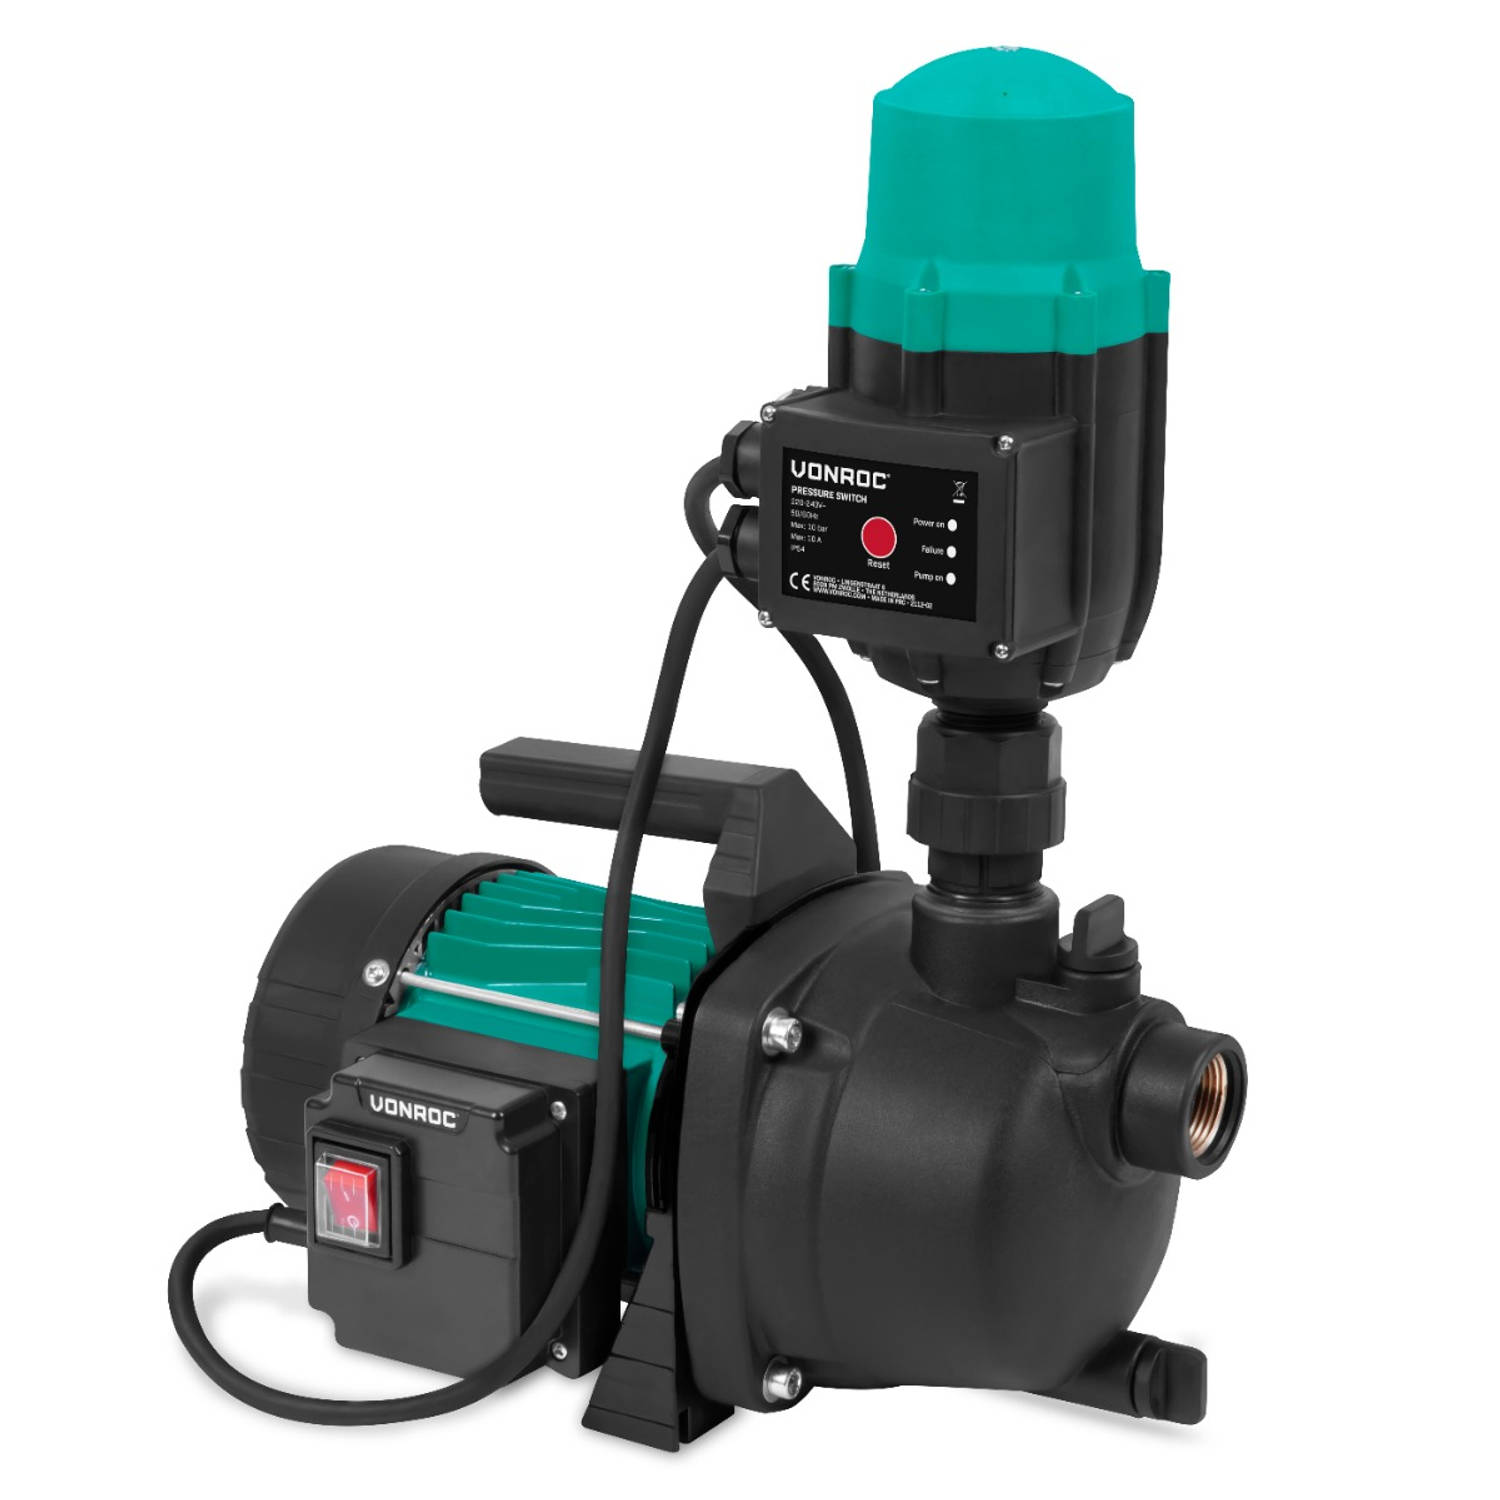 VONROC Hydrofoorpomp / Automatische pomp - 800W - 3300l/h - Met drukschakelaar - Droogloopbeveiliging - Voor besproeien en huishoudwater